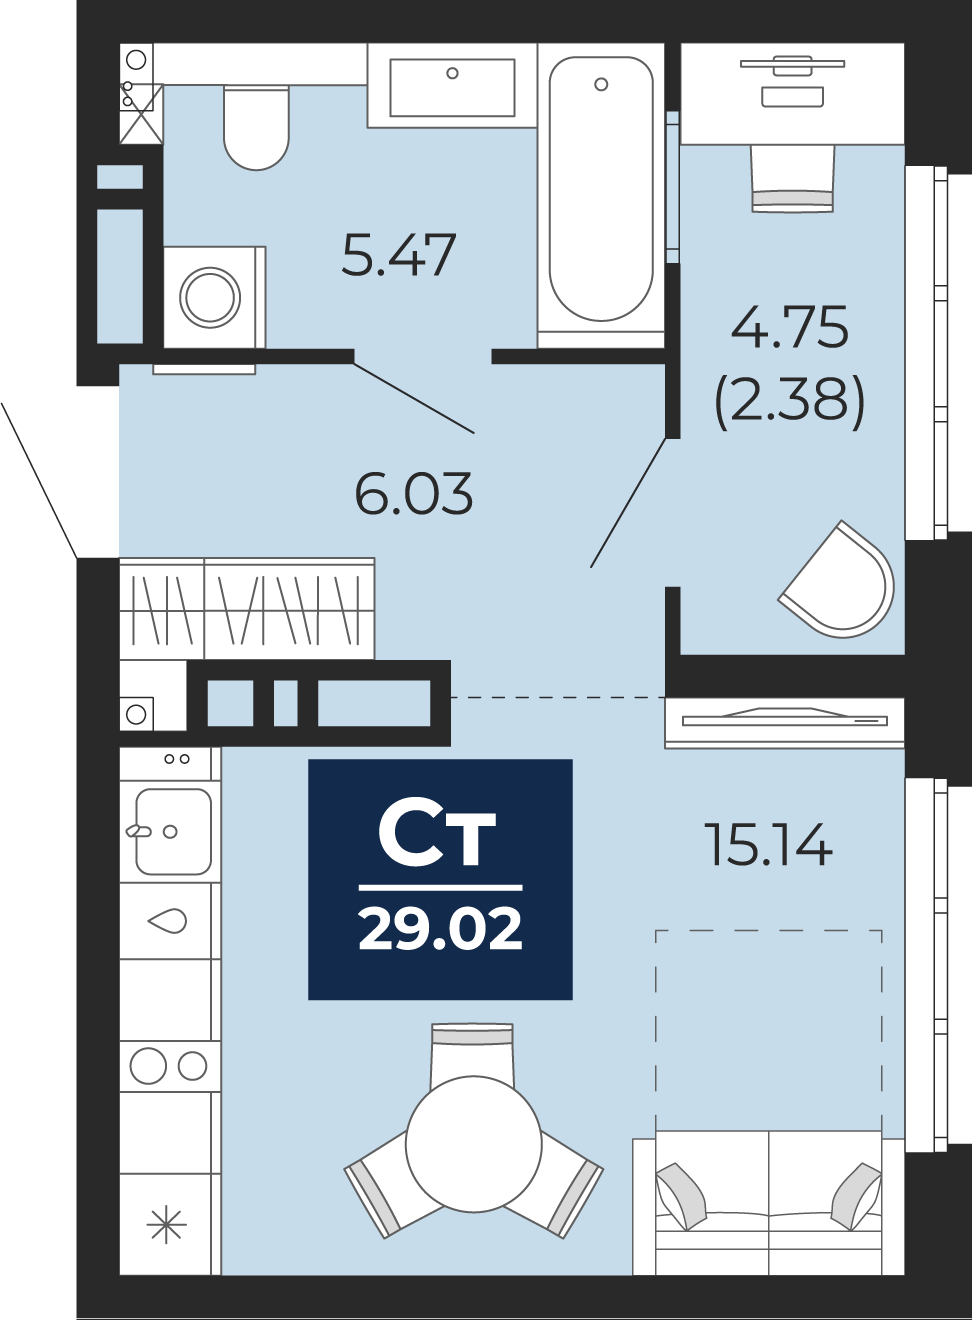 Квартира № 431, Студия, 29.02 кв. м, 20 этаж, проект «Беринг», корпус ГП-74 по цене 4 265 780 ₽ от застройщика «ЭНКО»